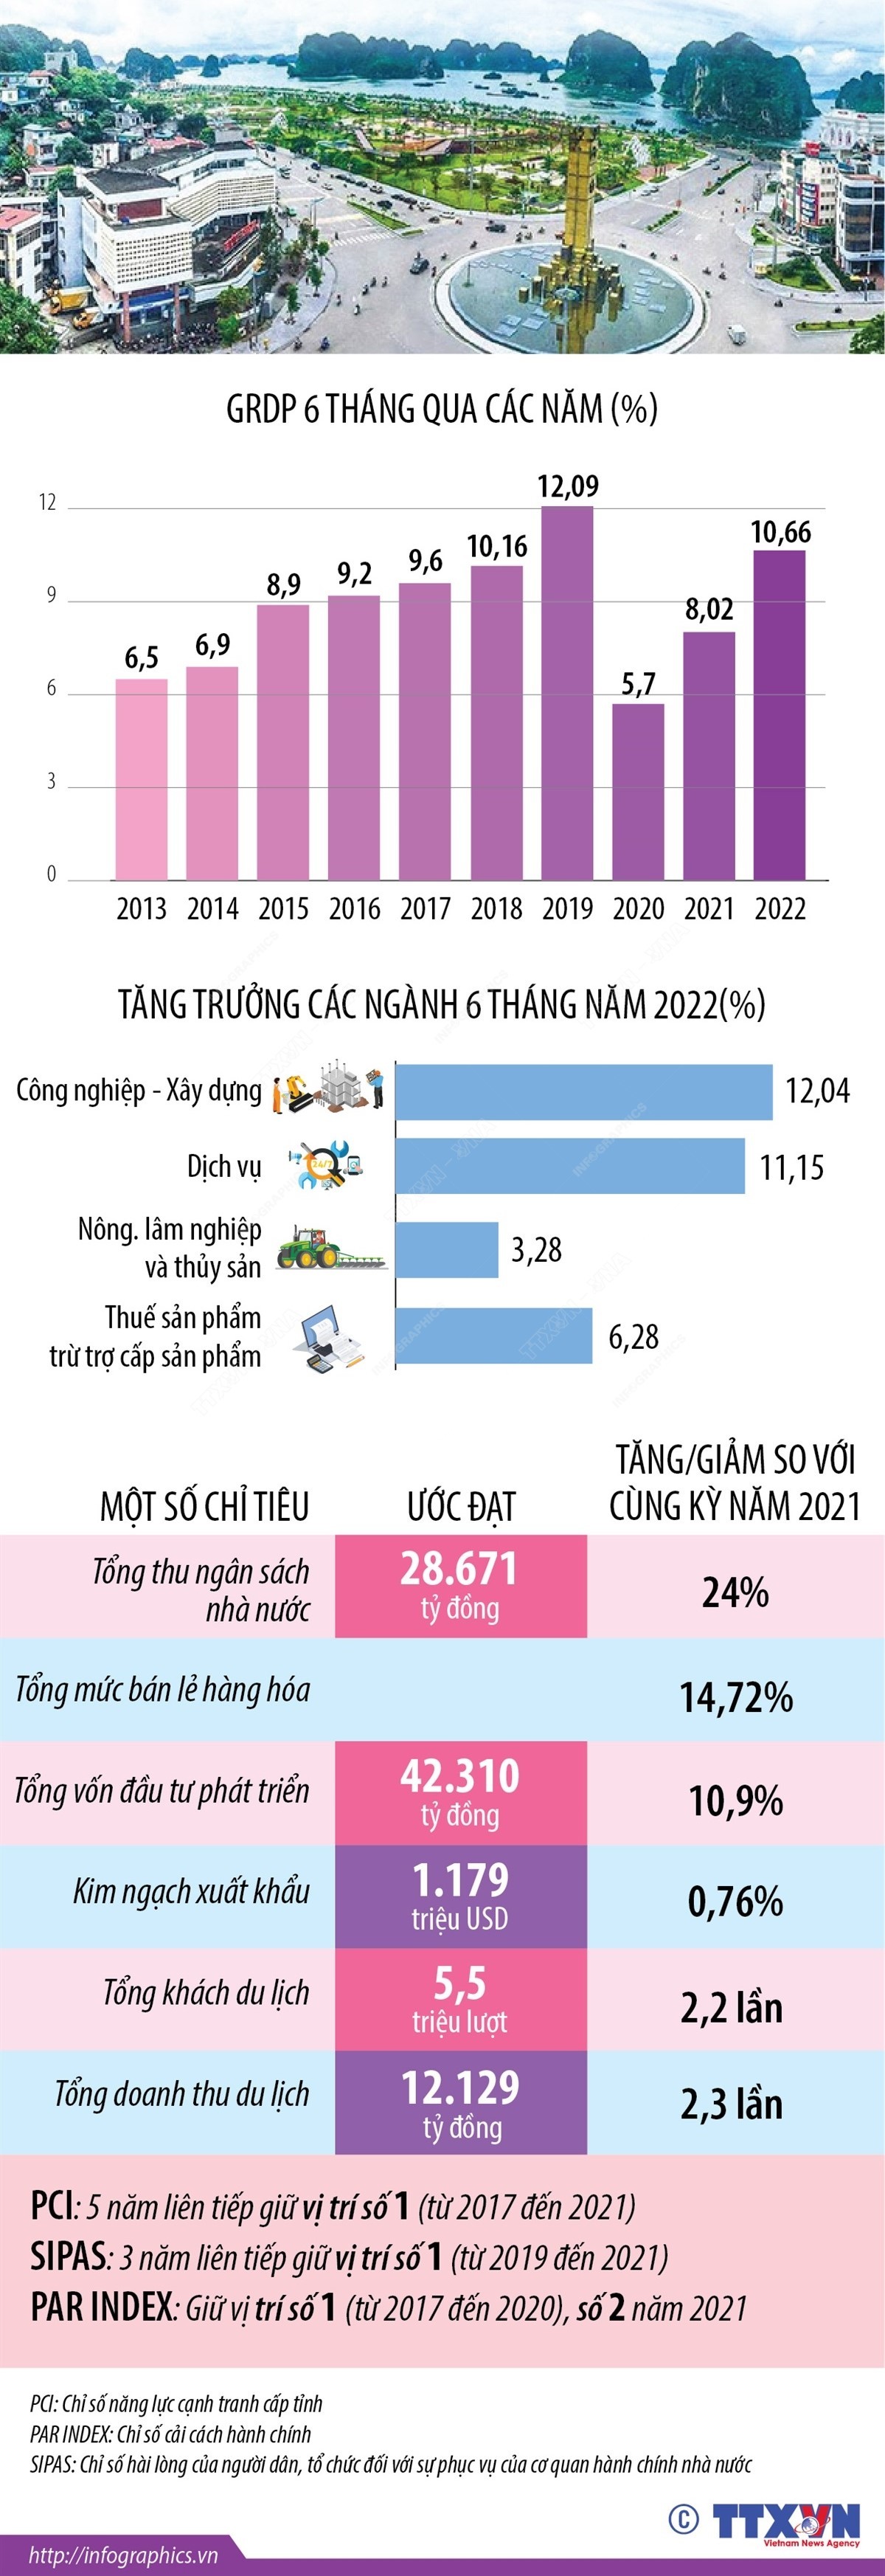 6 tháng năm 2022: Kinh tế Quảng Ninh tăng trưởng 10,66%